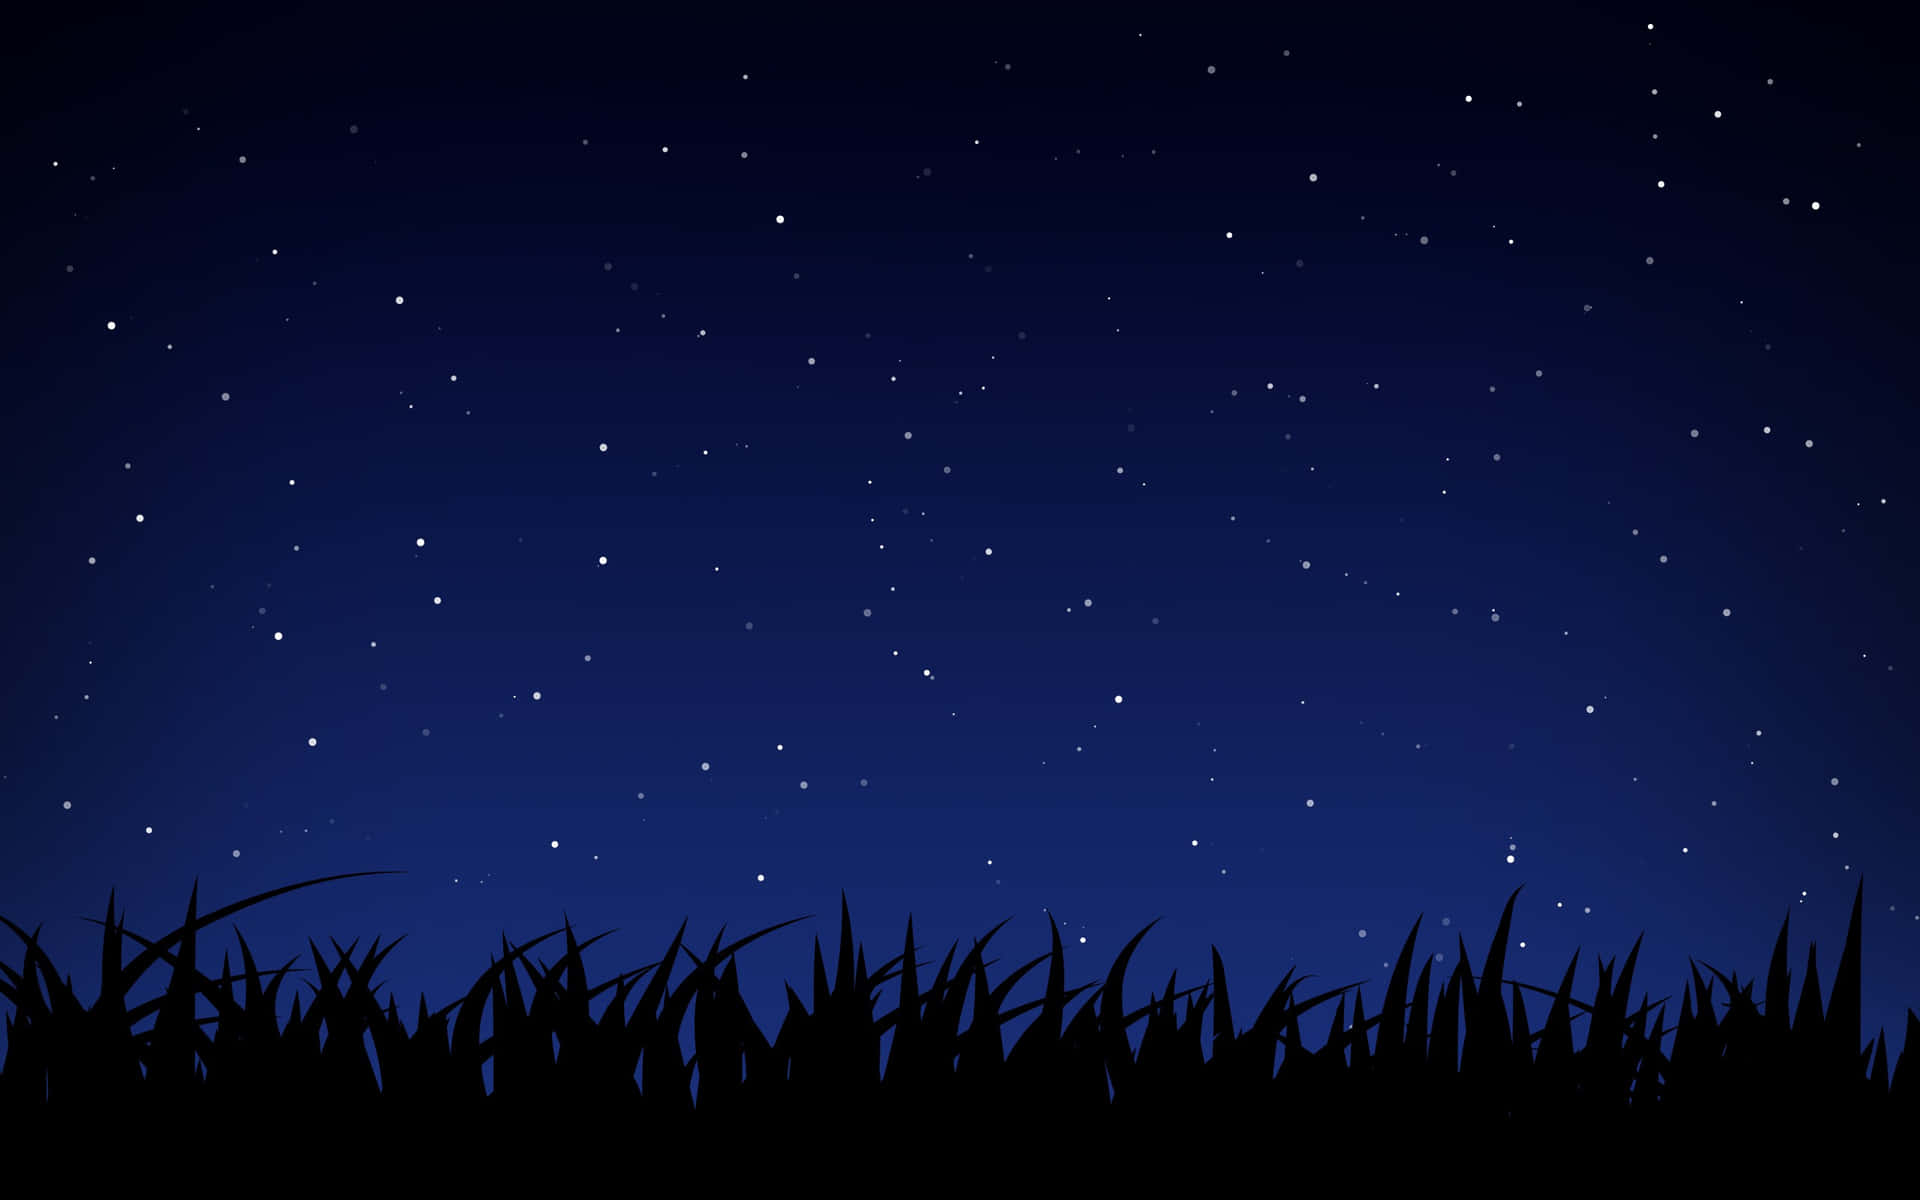 Denstjerneklare Nattehimmel Er Majestætisk.